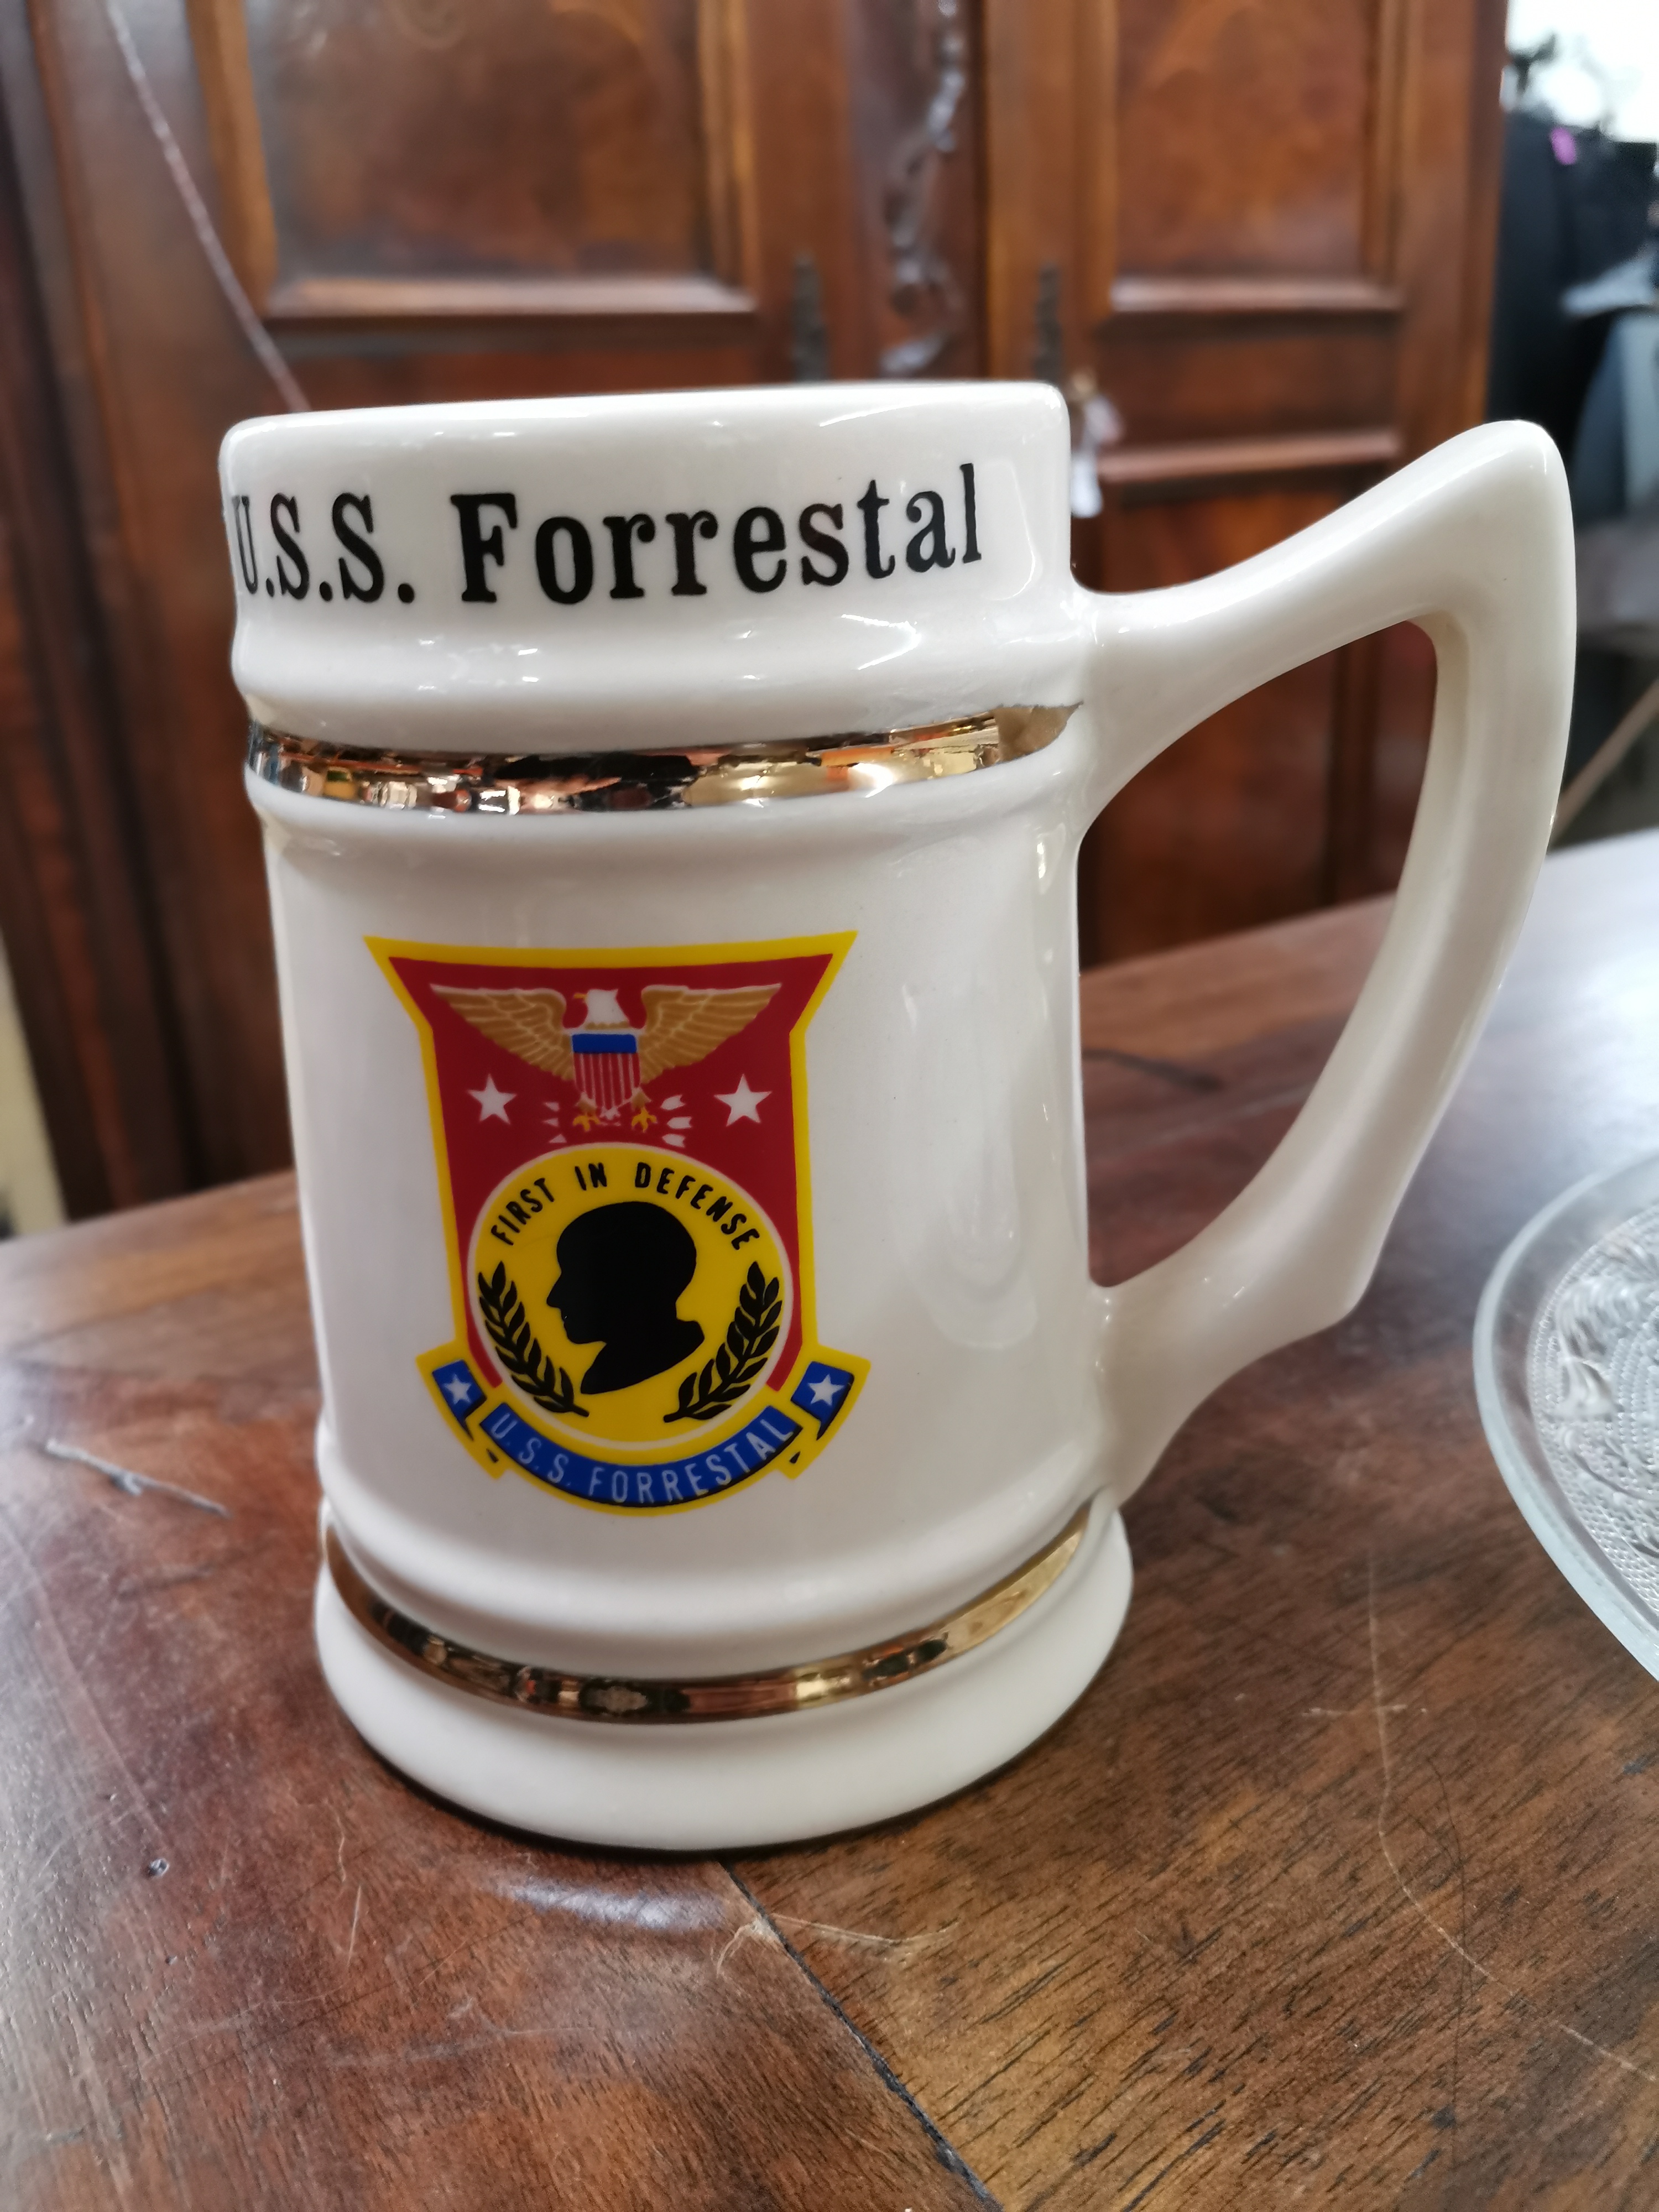 U.S.S. Forrestal / First in Defense Krug   n